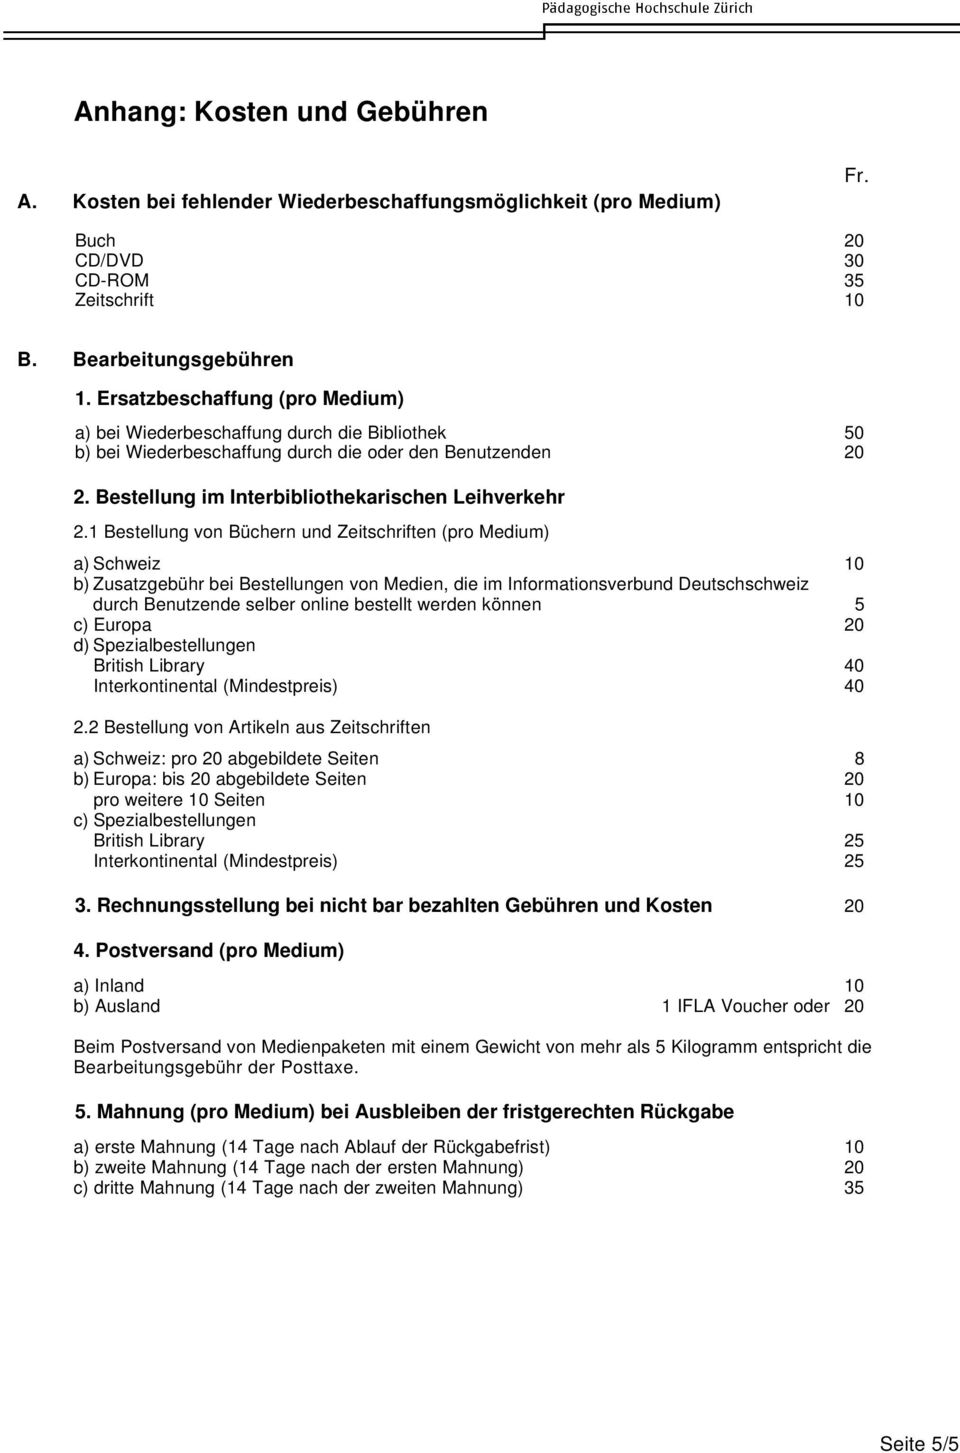 1 Bestellung von Büchern und Zeitschriften (pro Medium) a) Schweiz 10 b) Zusatzgebühr bei Bestellungen von Medien, die im Informationsverbund Deutschschweiz durch Benutzende selber online bestellt